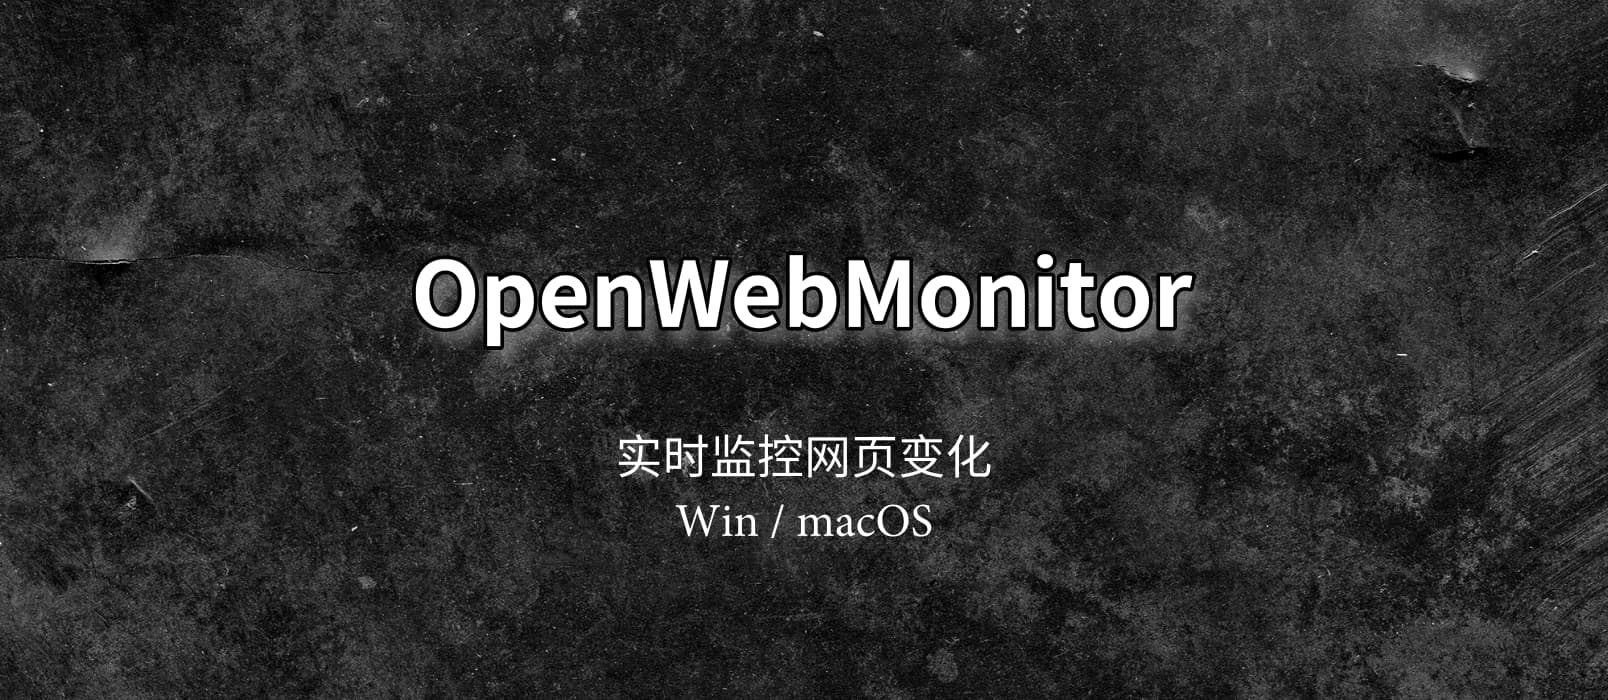 OpenWebMonitor - 实时监控网页变化，并报警通知[Win/macOS] 1